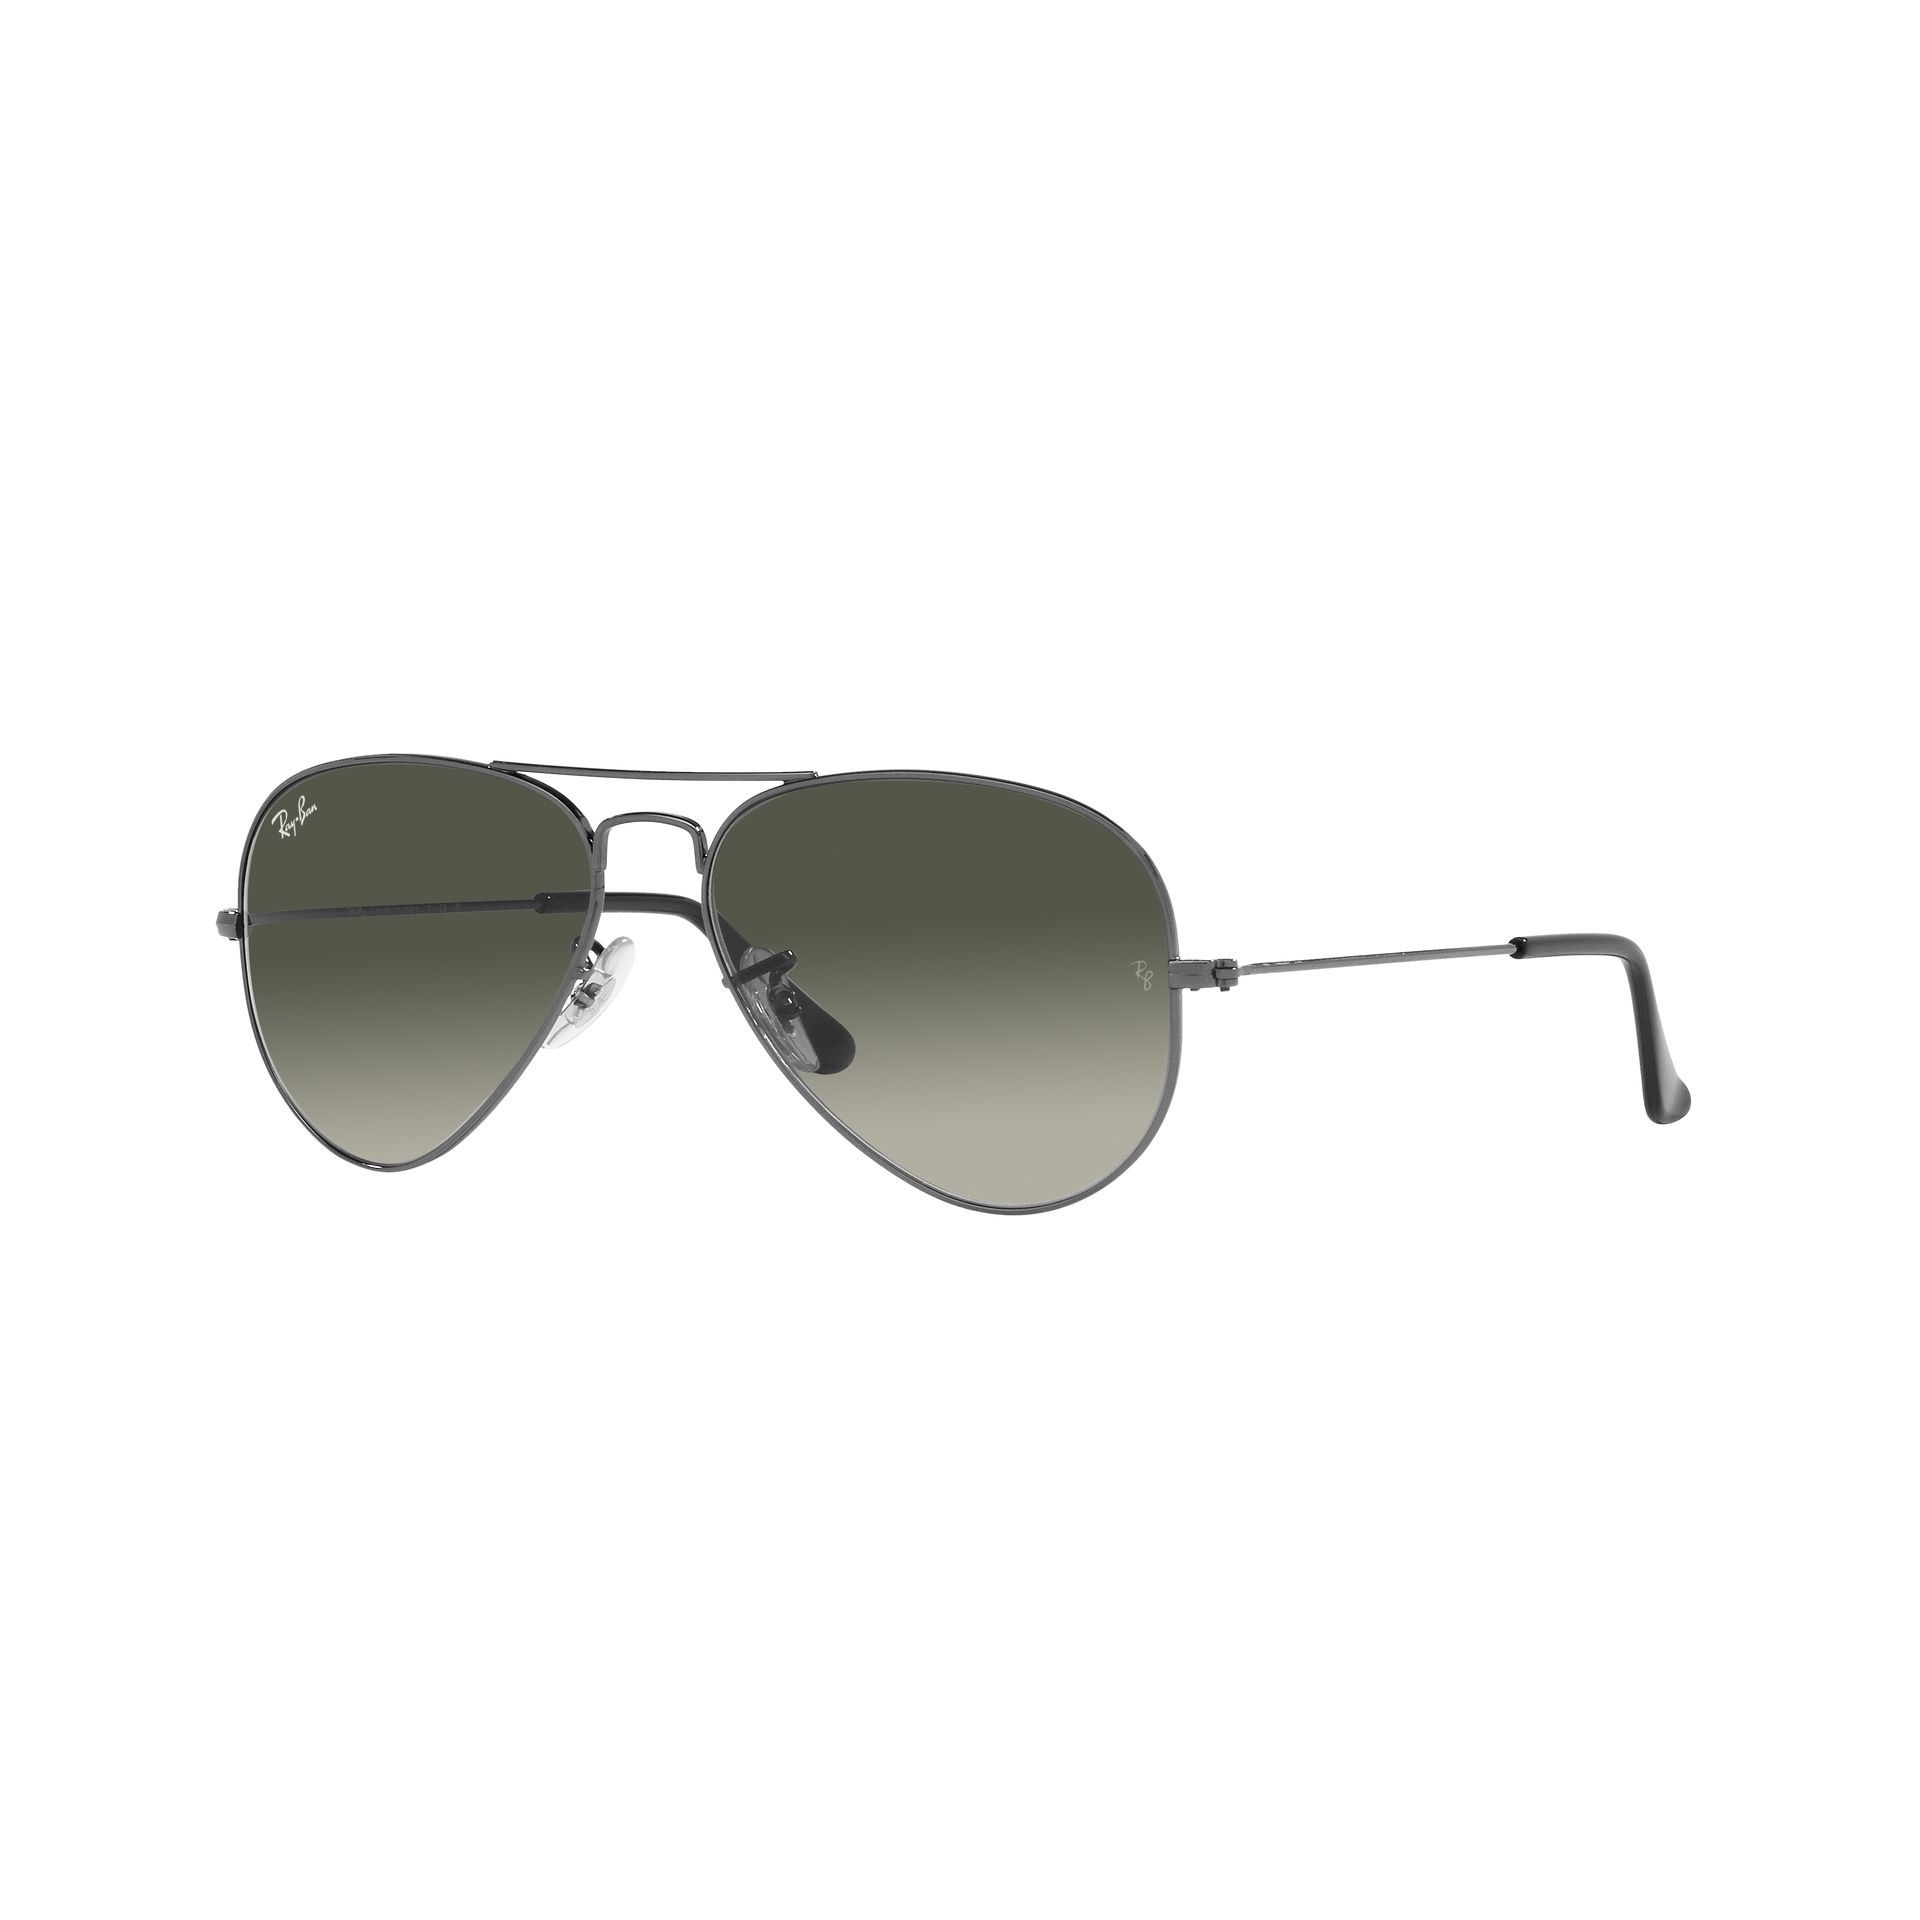 0RB3025 Aviator Sunglasses 004 71 - size 58